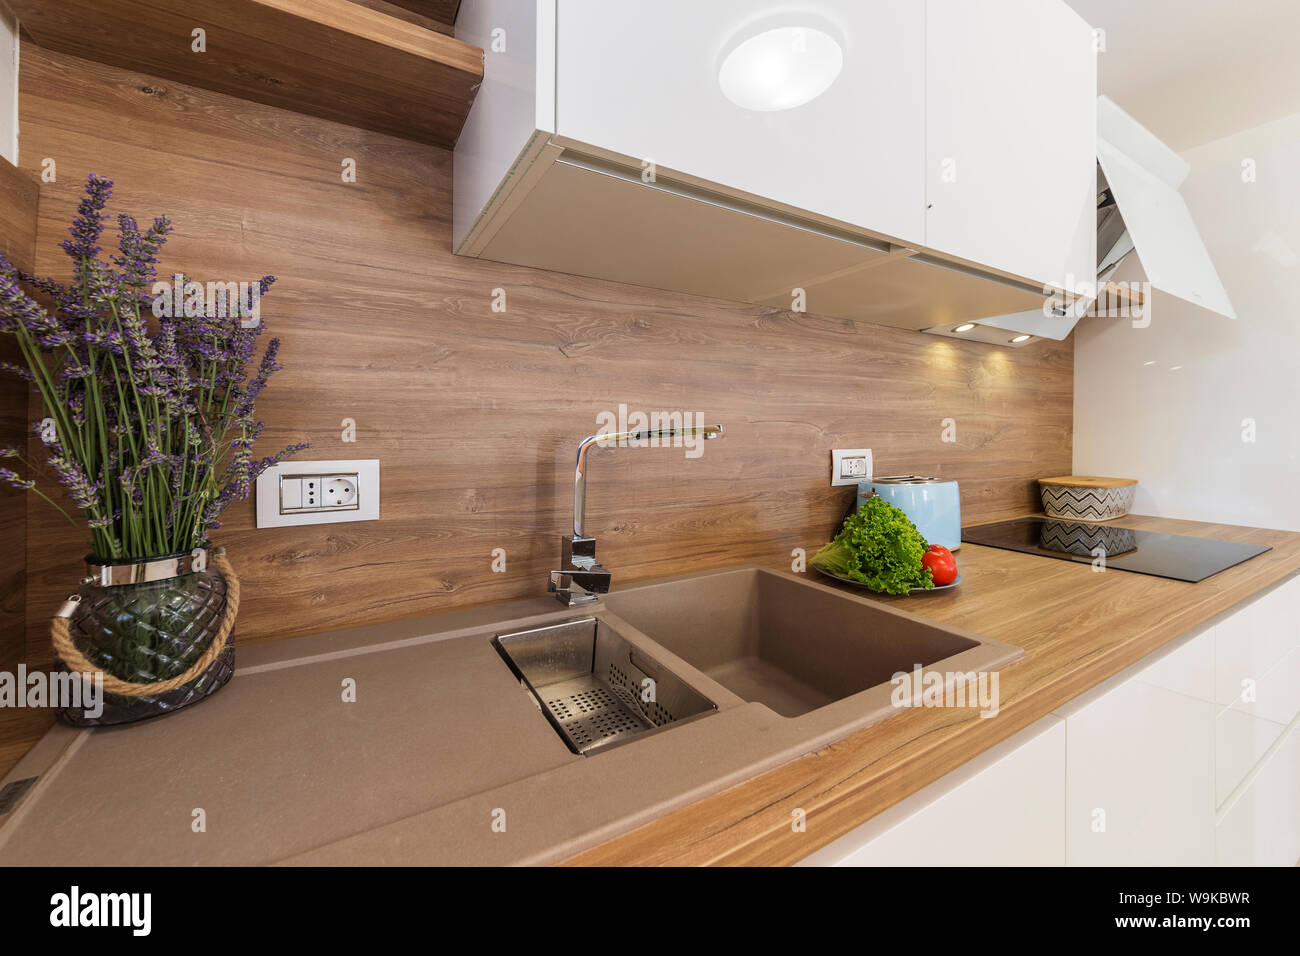 Moderne Küche Interieur mit Gemüse und Lavendel Stockfoto